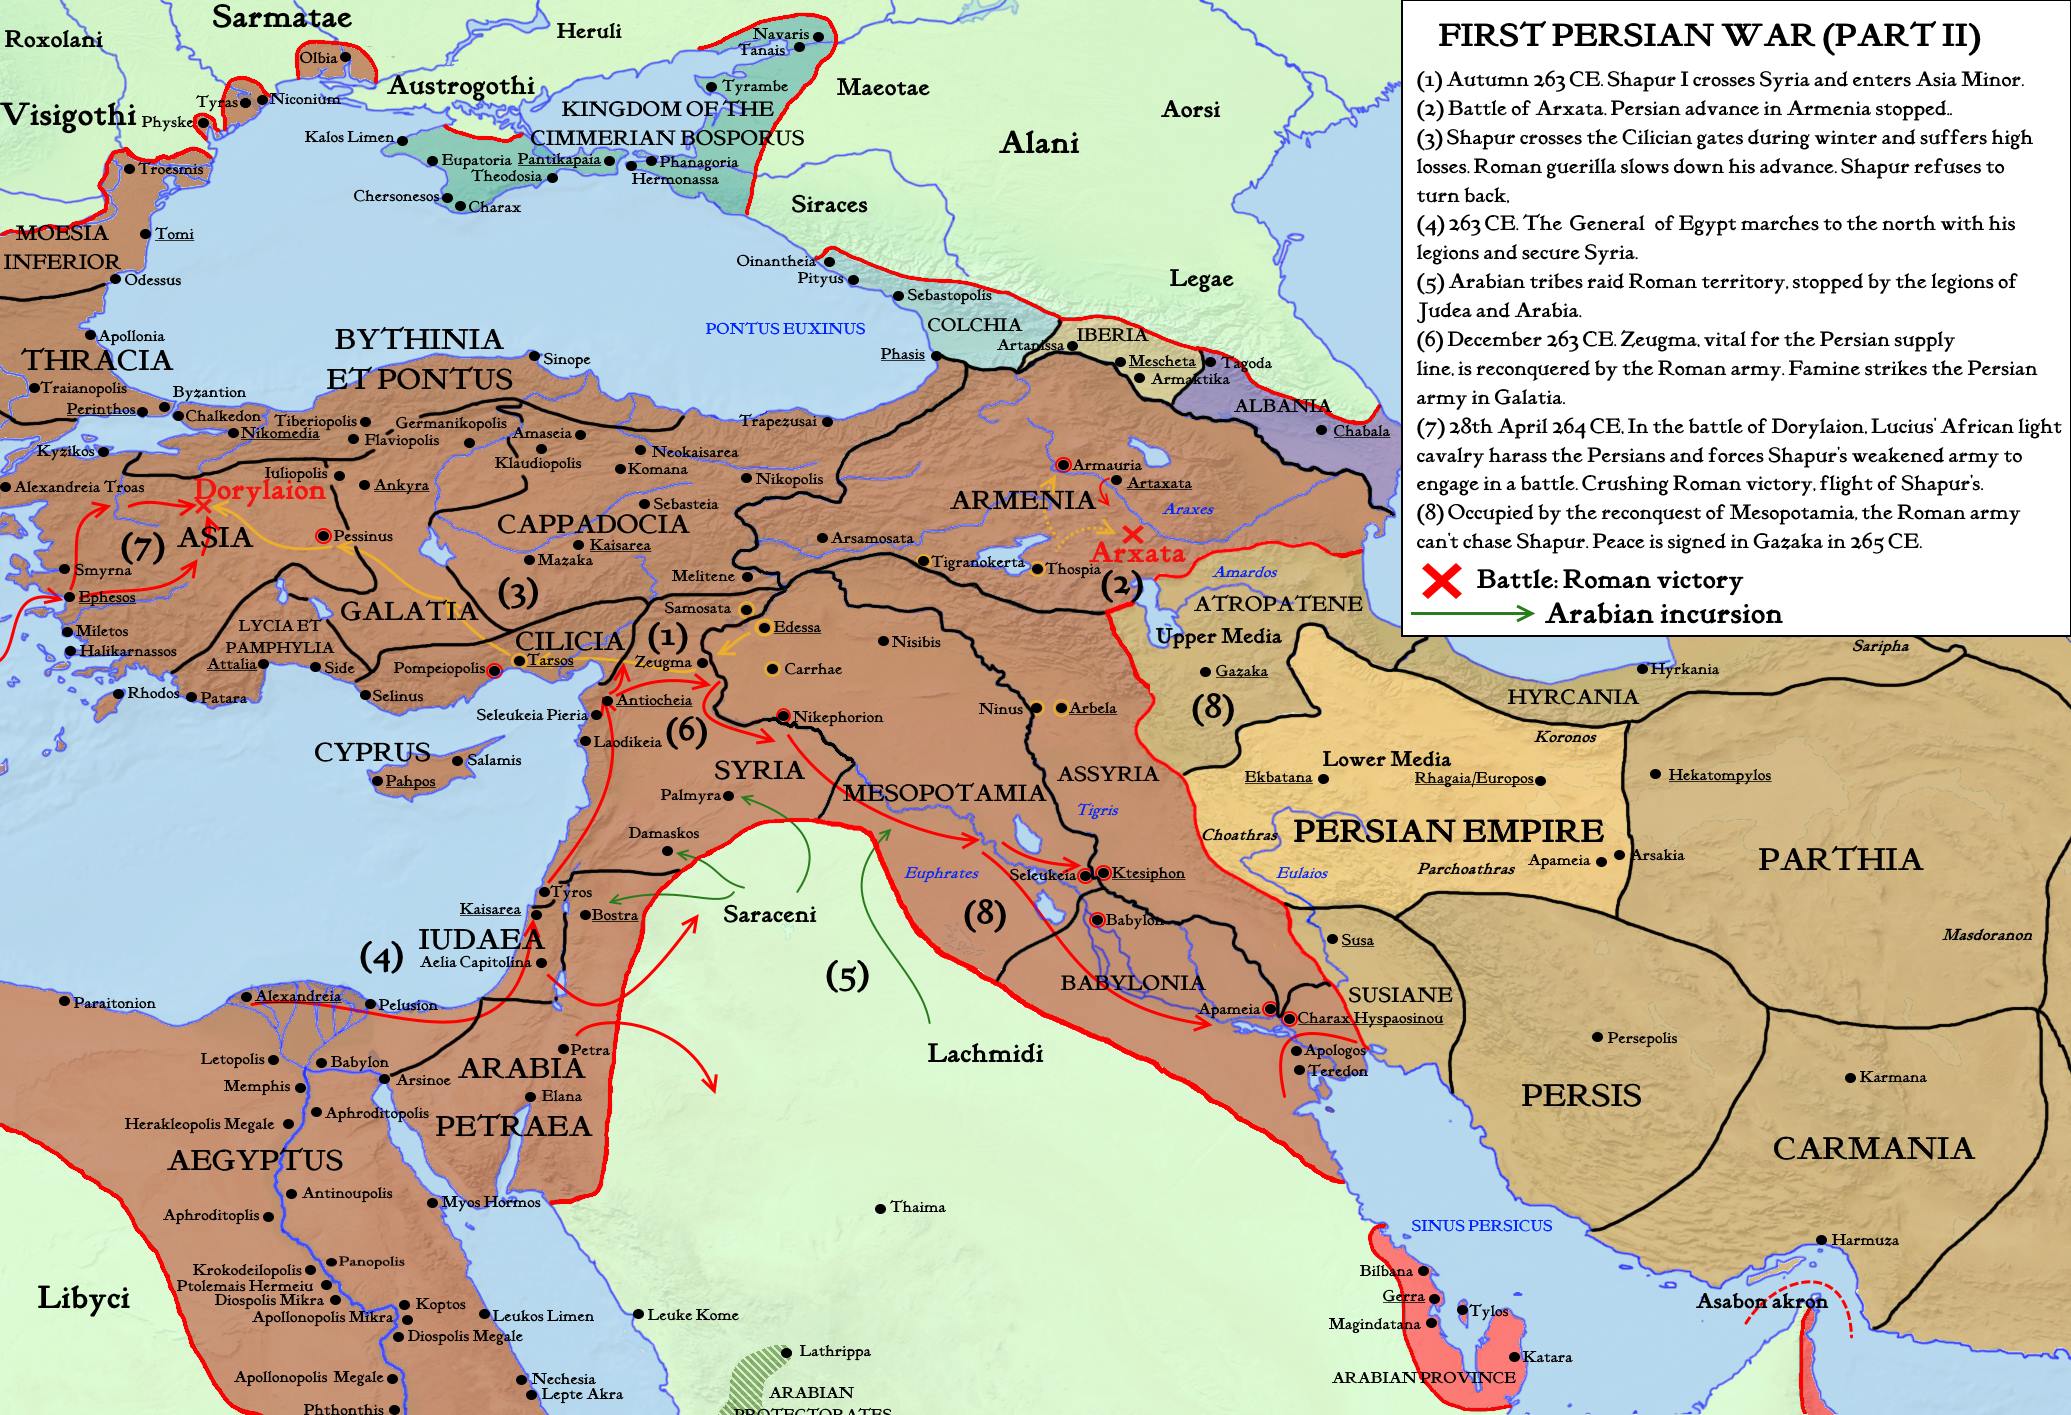 First Persian War (2).jpg